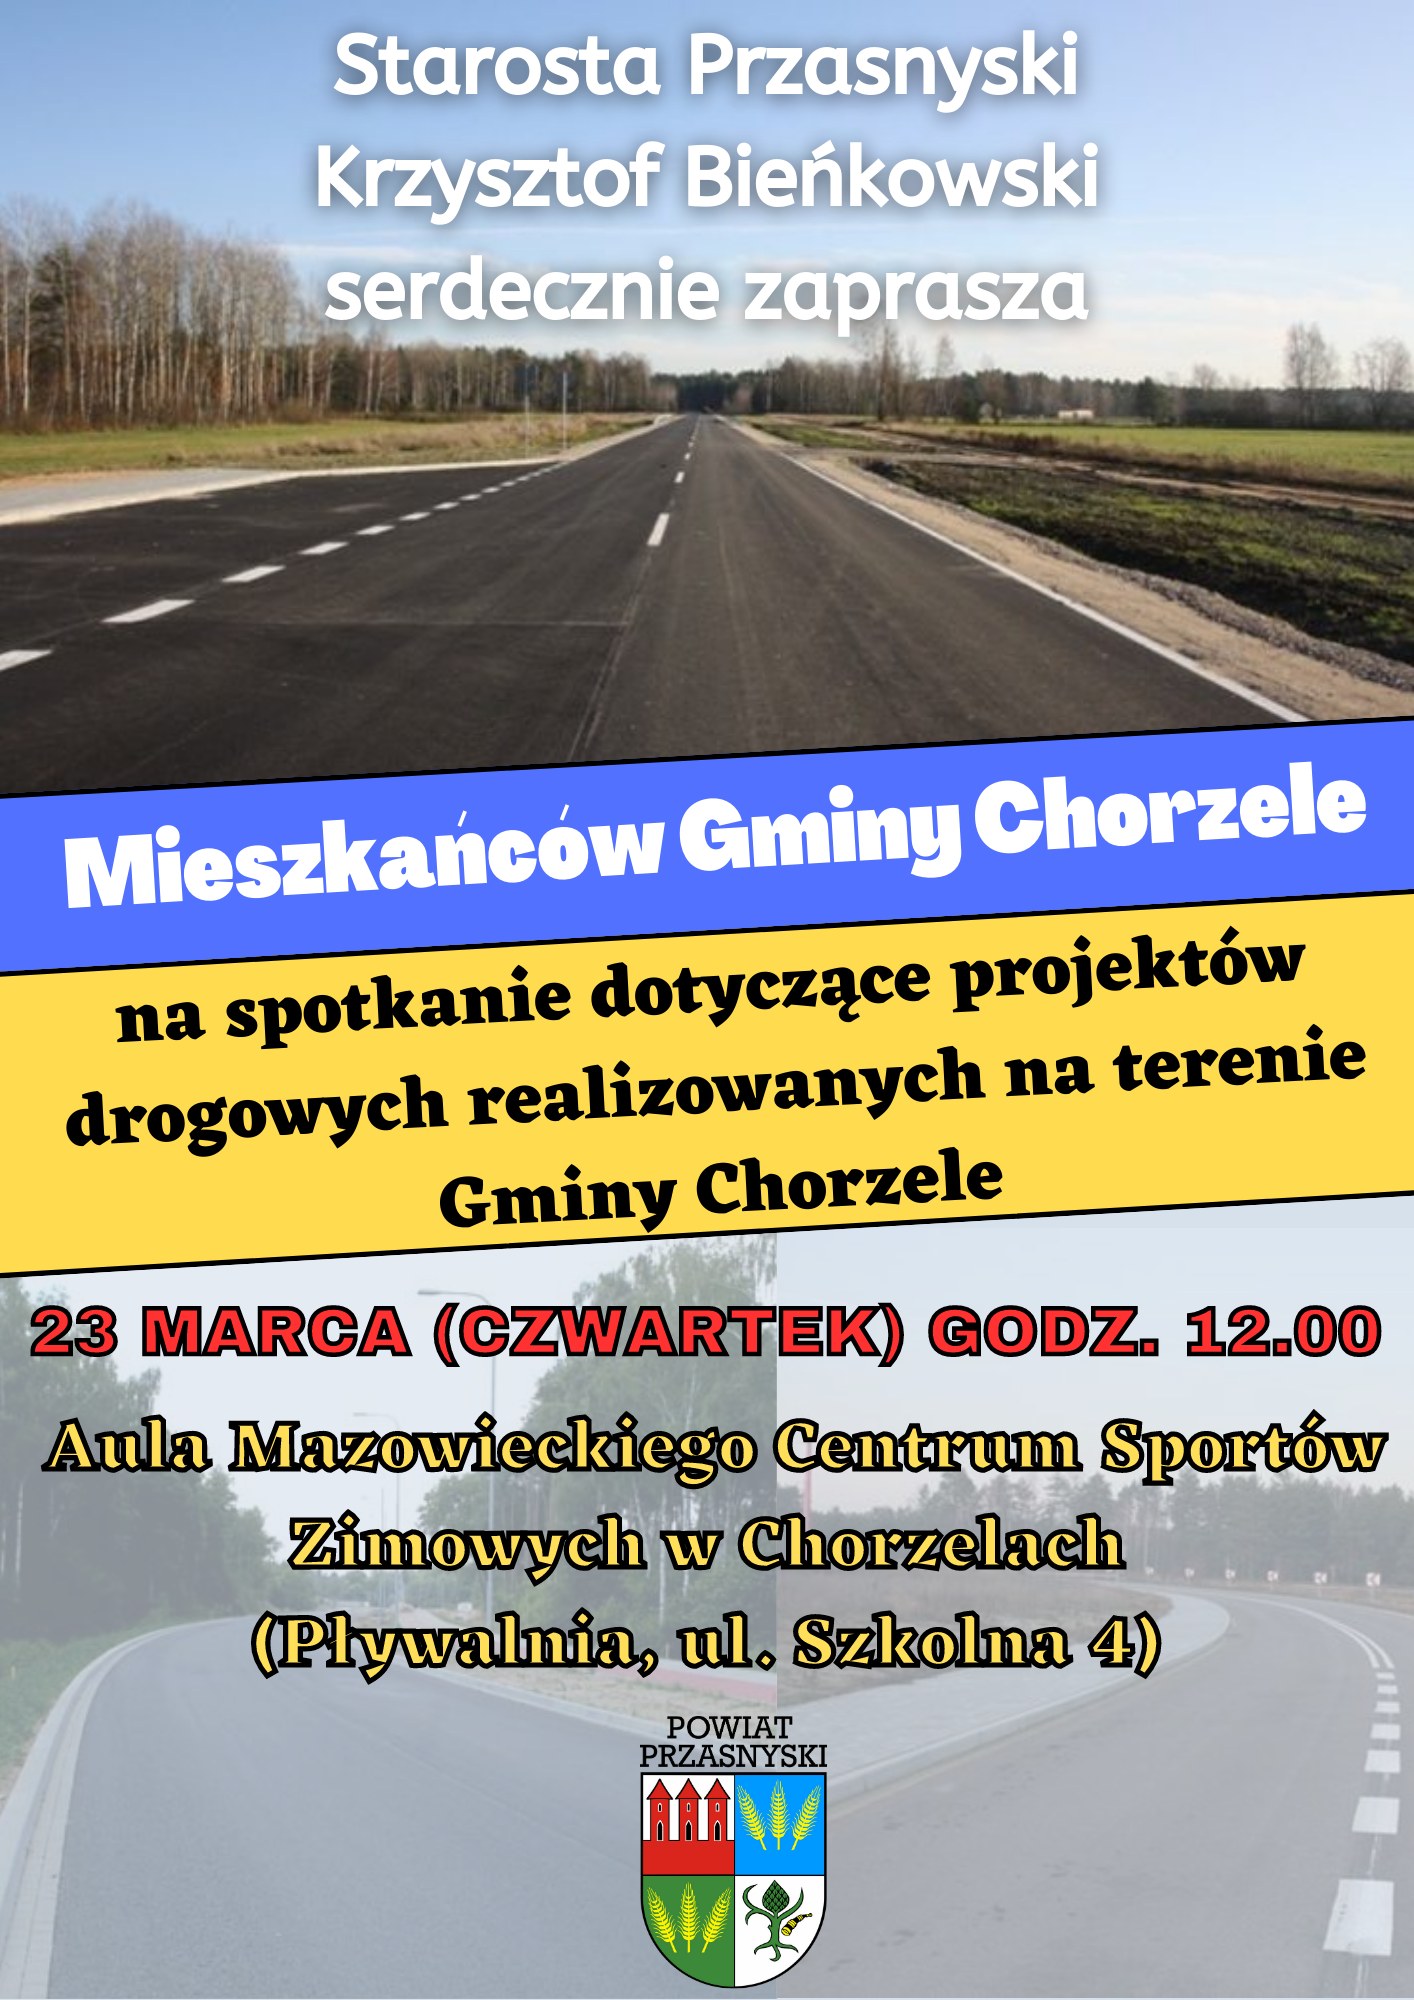 Plakat informujący o spotkaniu Starosty Przasnyskiego w Chorzelach. Treść w artykule.